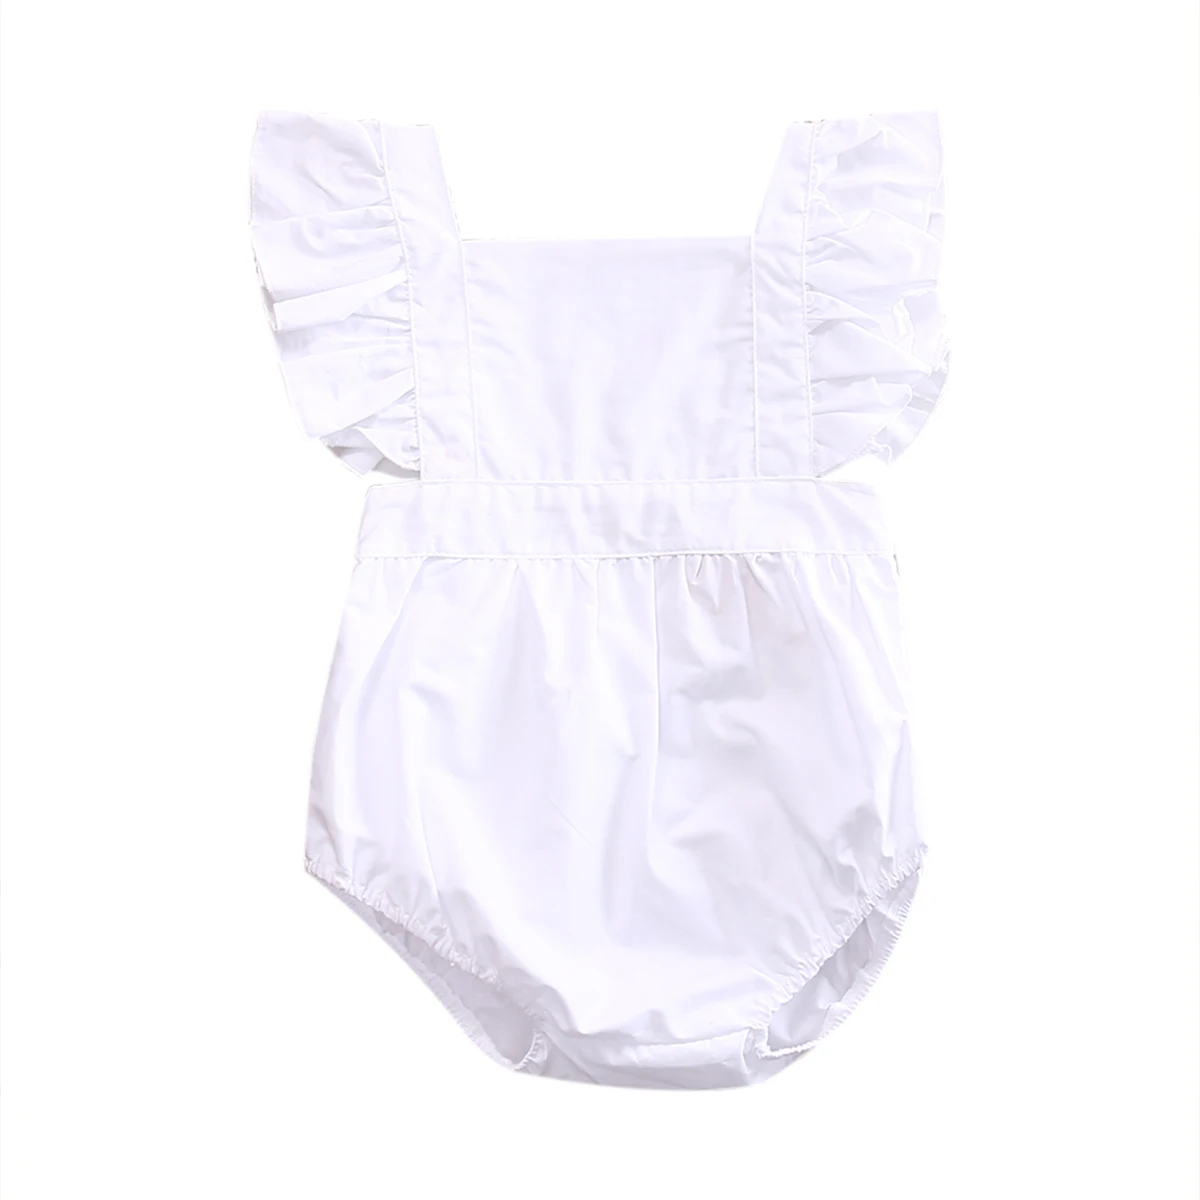 Хи-хи, детский магазин для новорожденных девочек, однотонное белое кружевное хлопчатобумажное Боди без рукавов от 0 до 24 месяцев